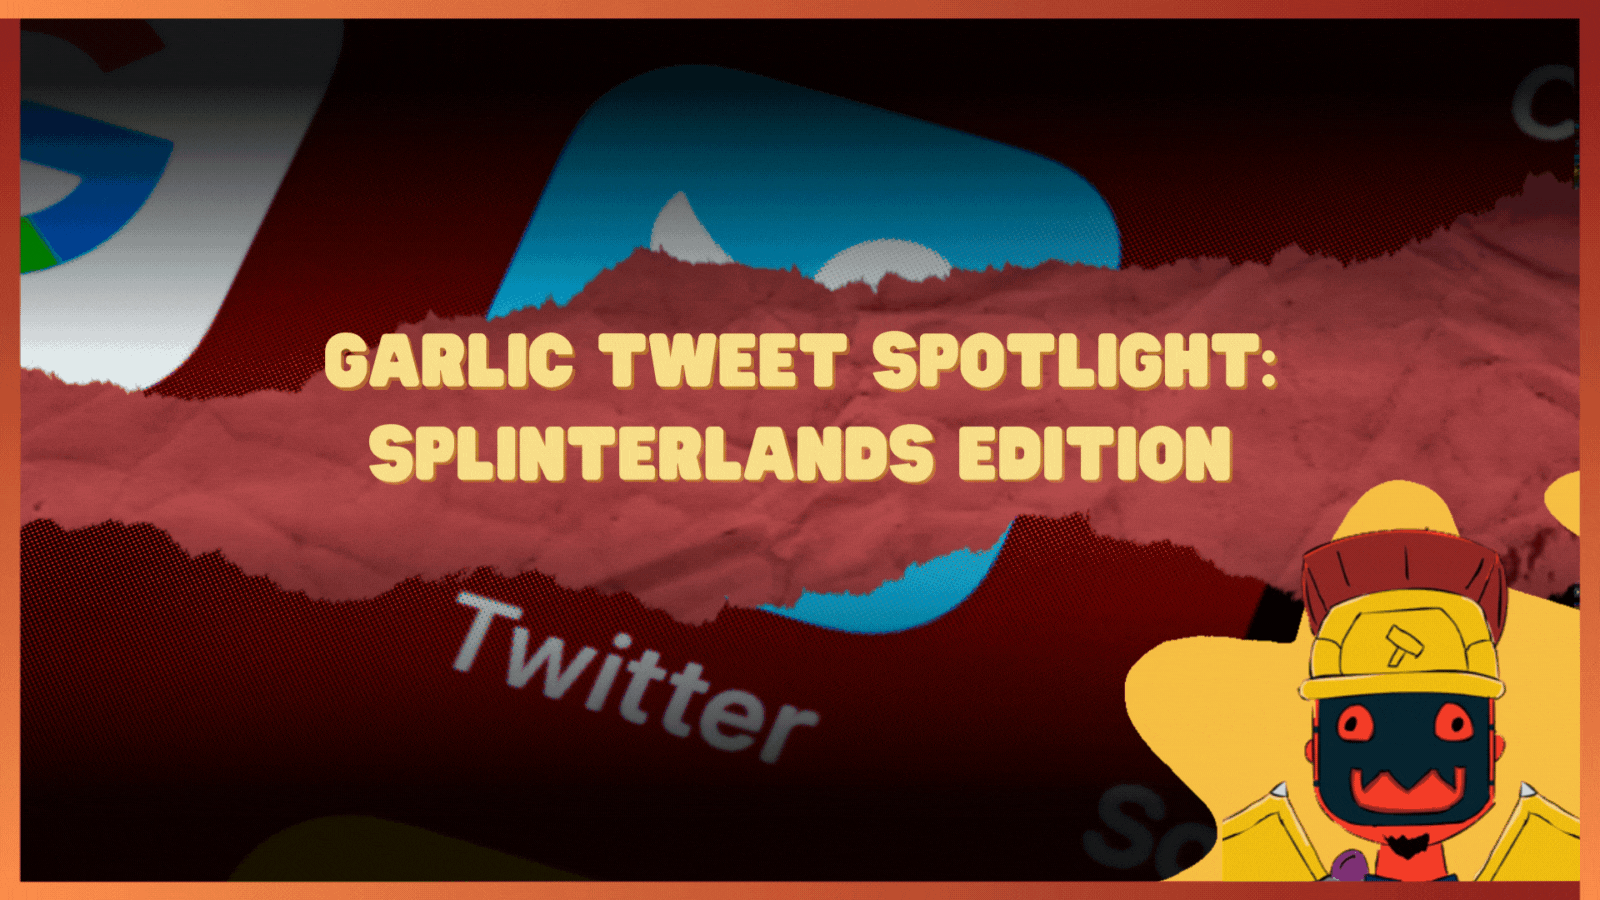 @cmmndrbawang/garlic-tweet-spotlight-splinterlands-edition